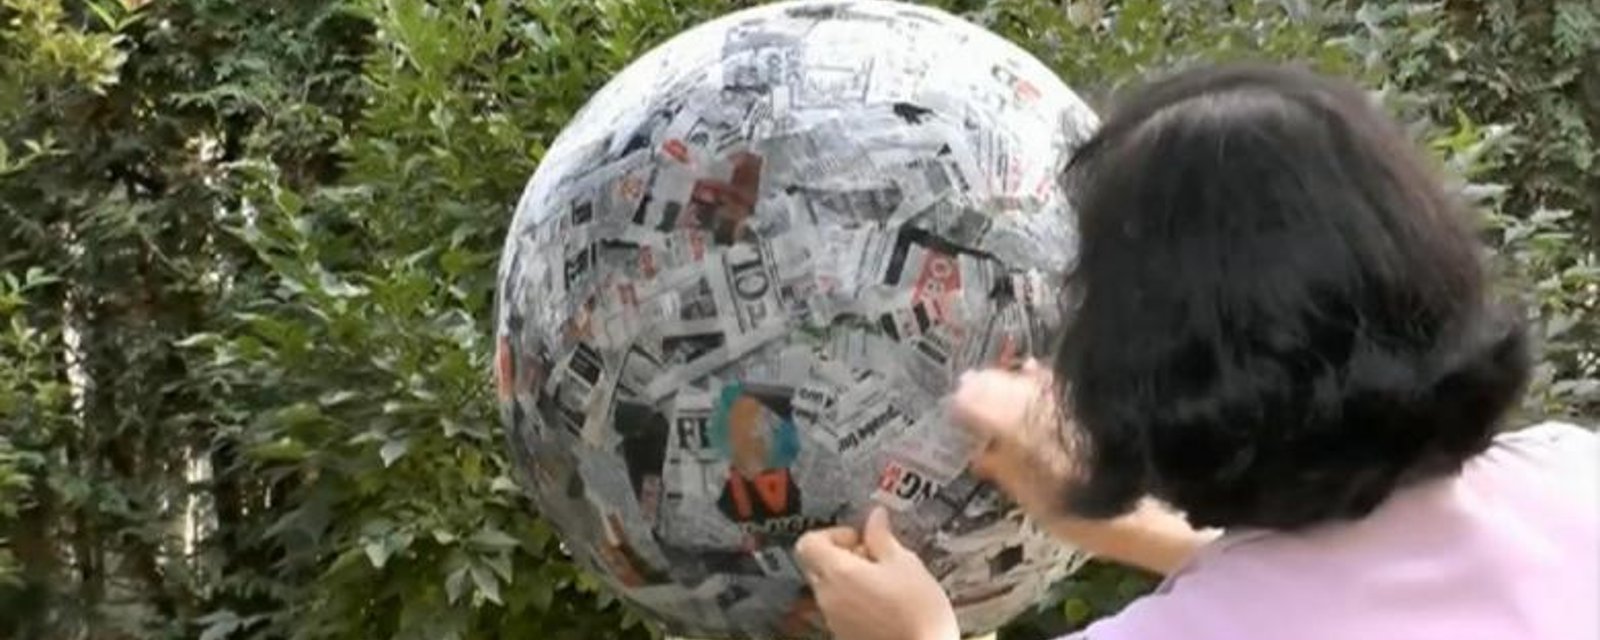 Le plus gros de son travail à été de faire cette énorme boule de papier mâché.. MAIS WOW!!! 